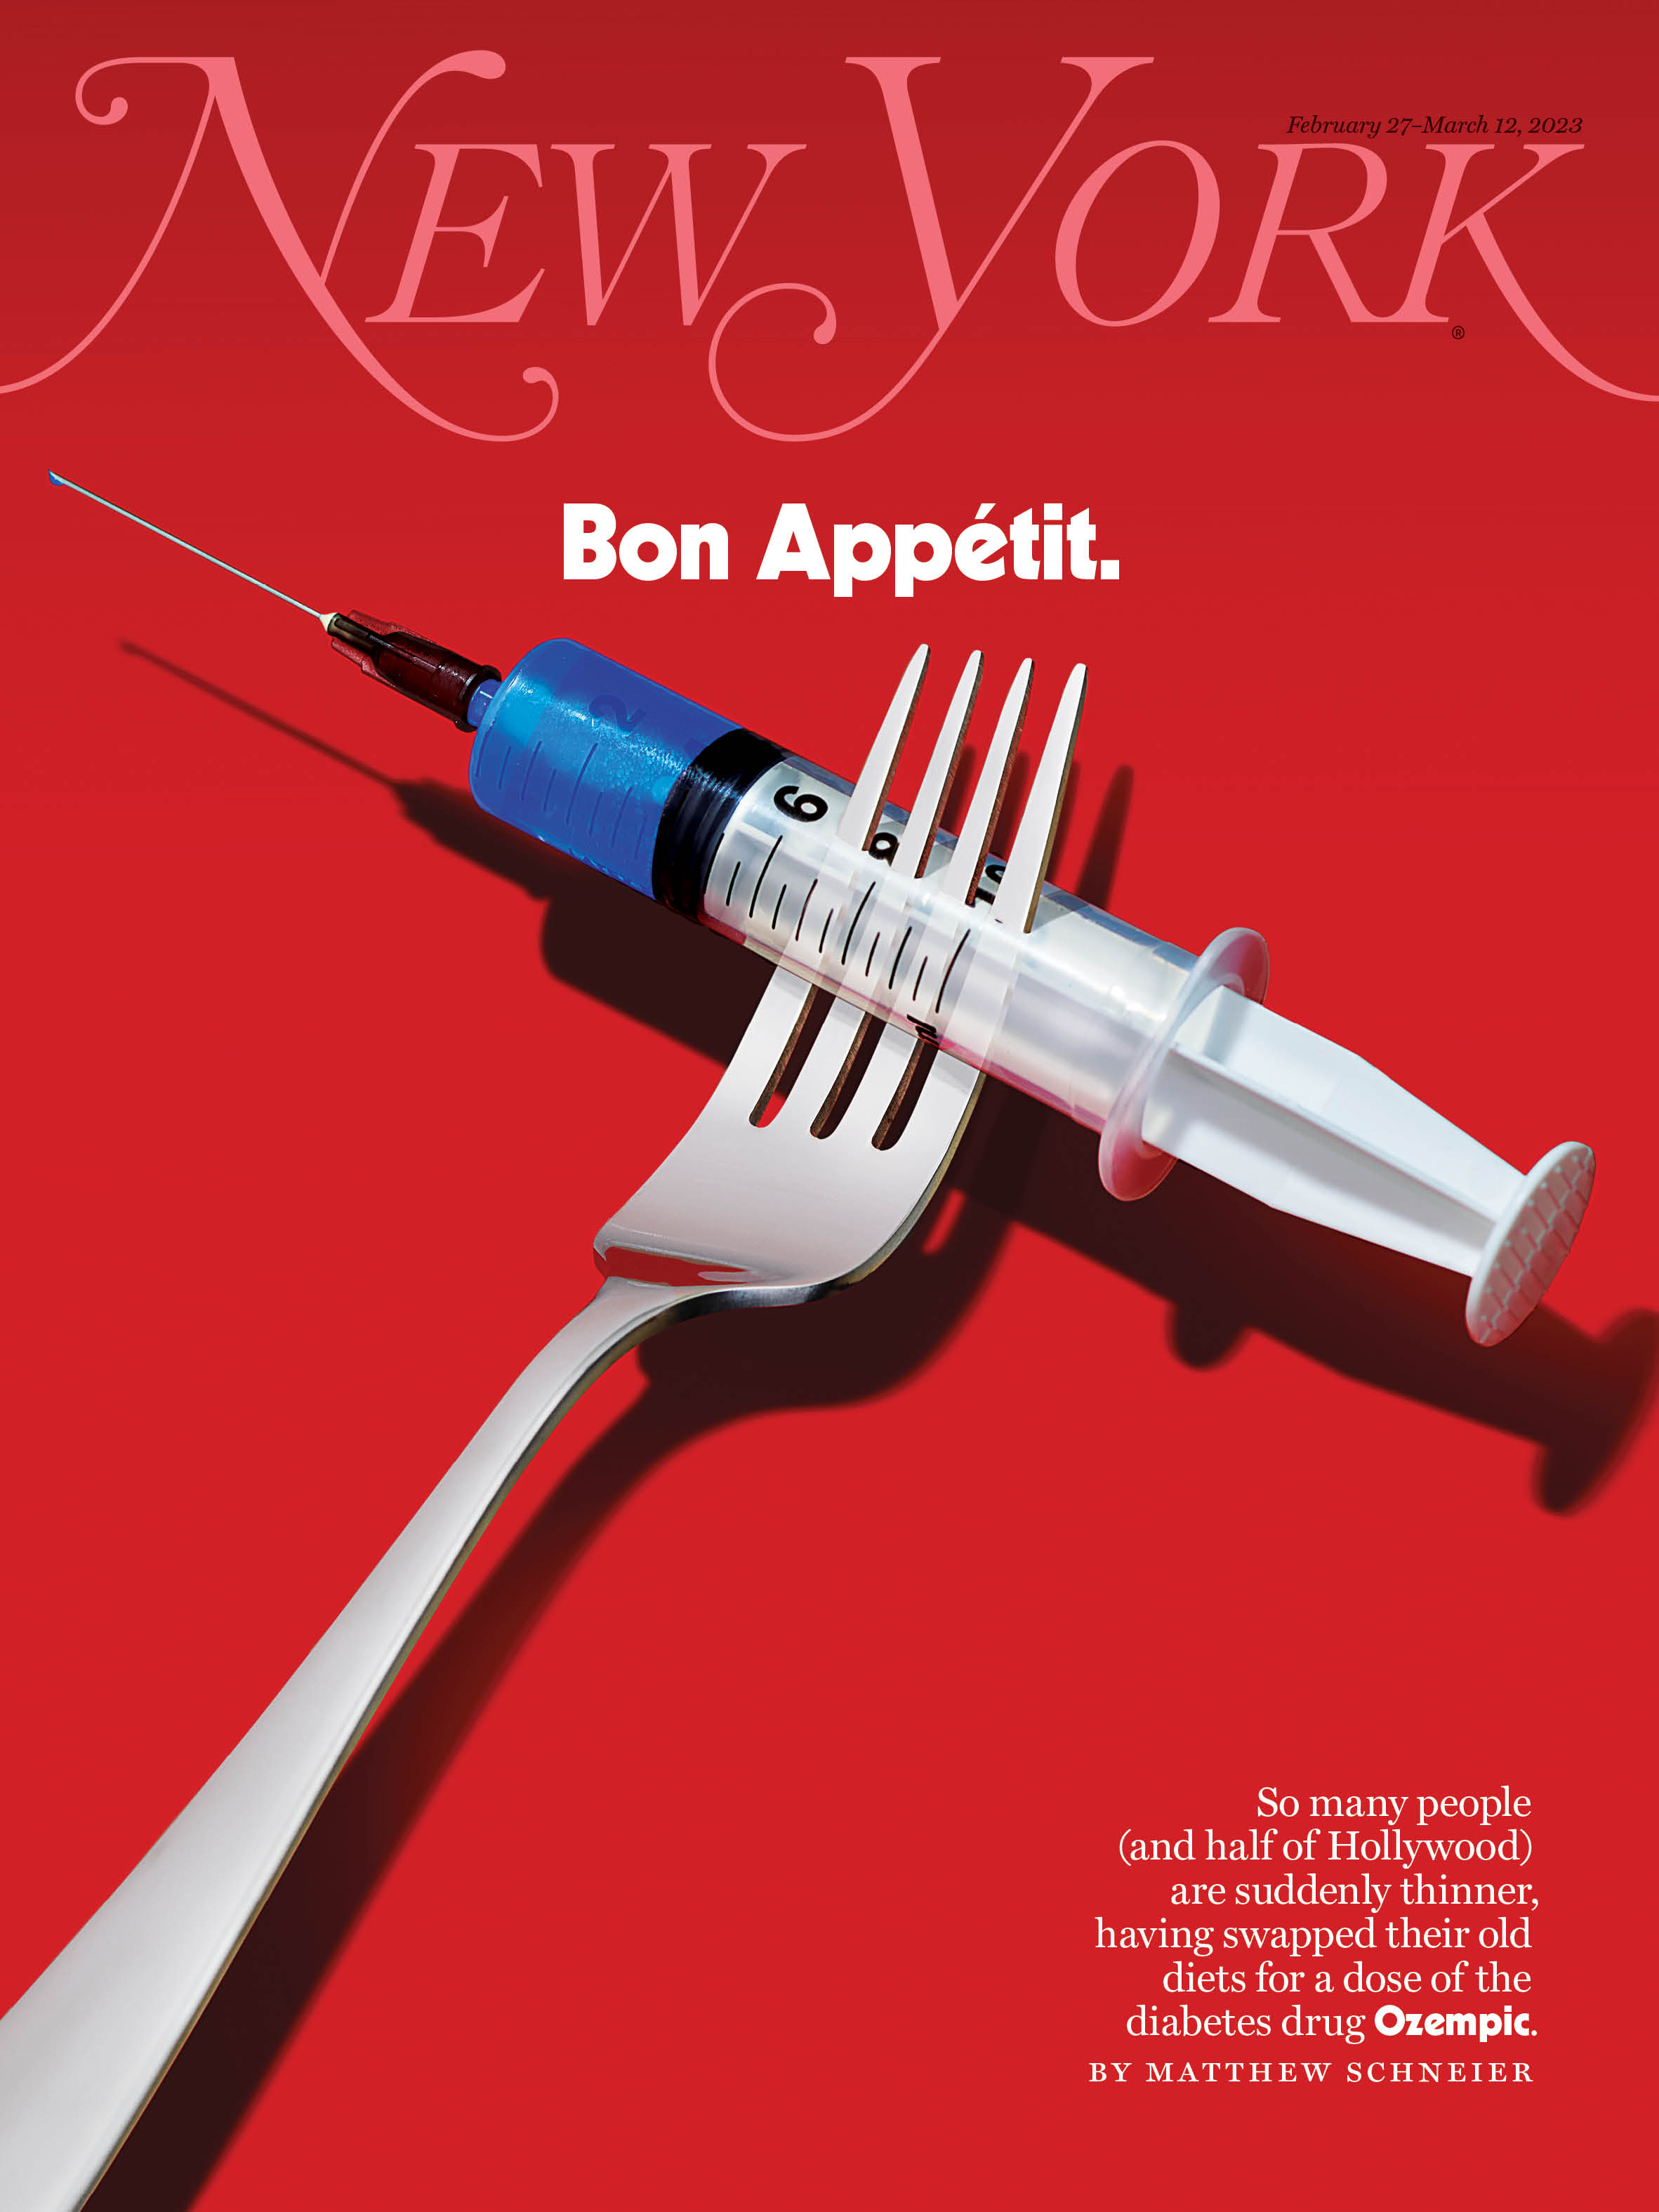 New York - “Bon Appétit,” February 27–March 12, 2023